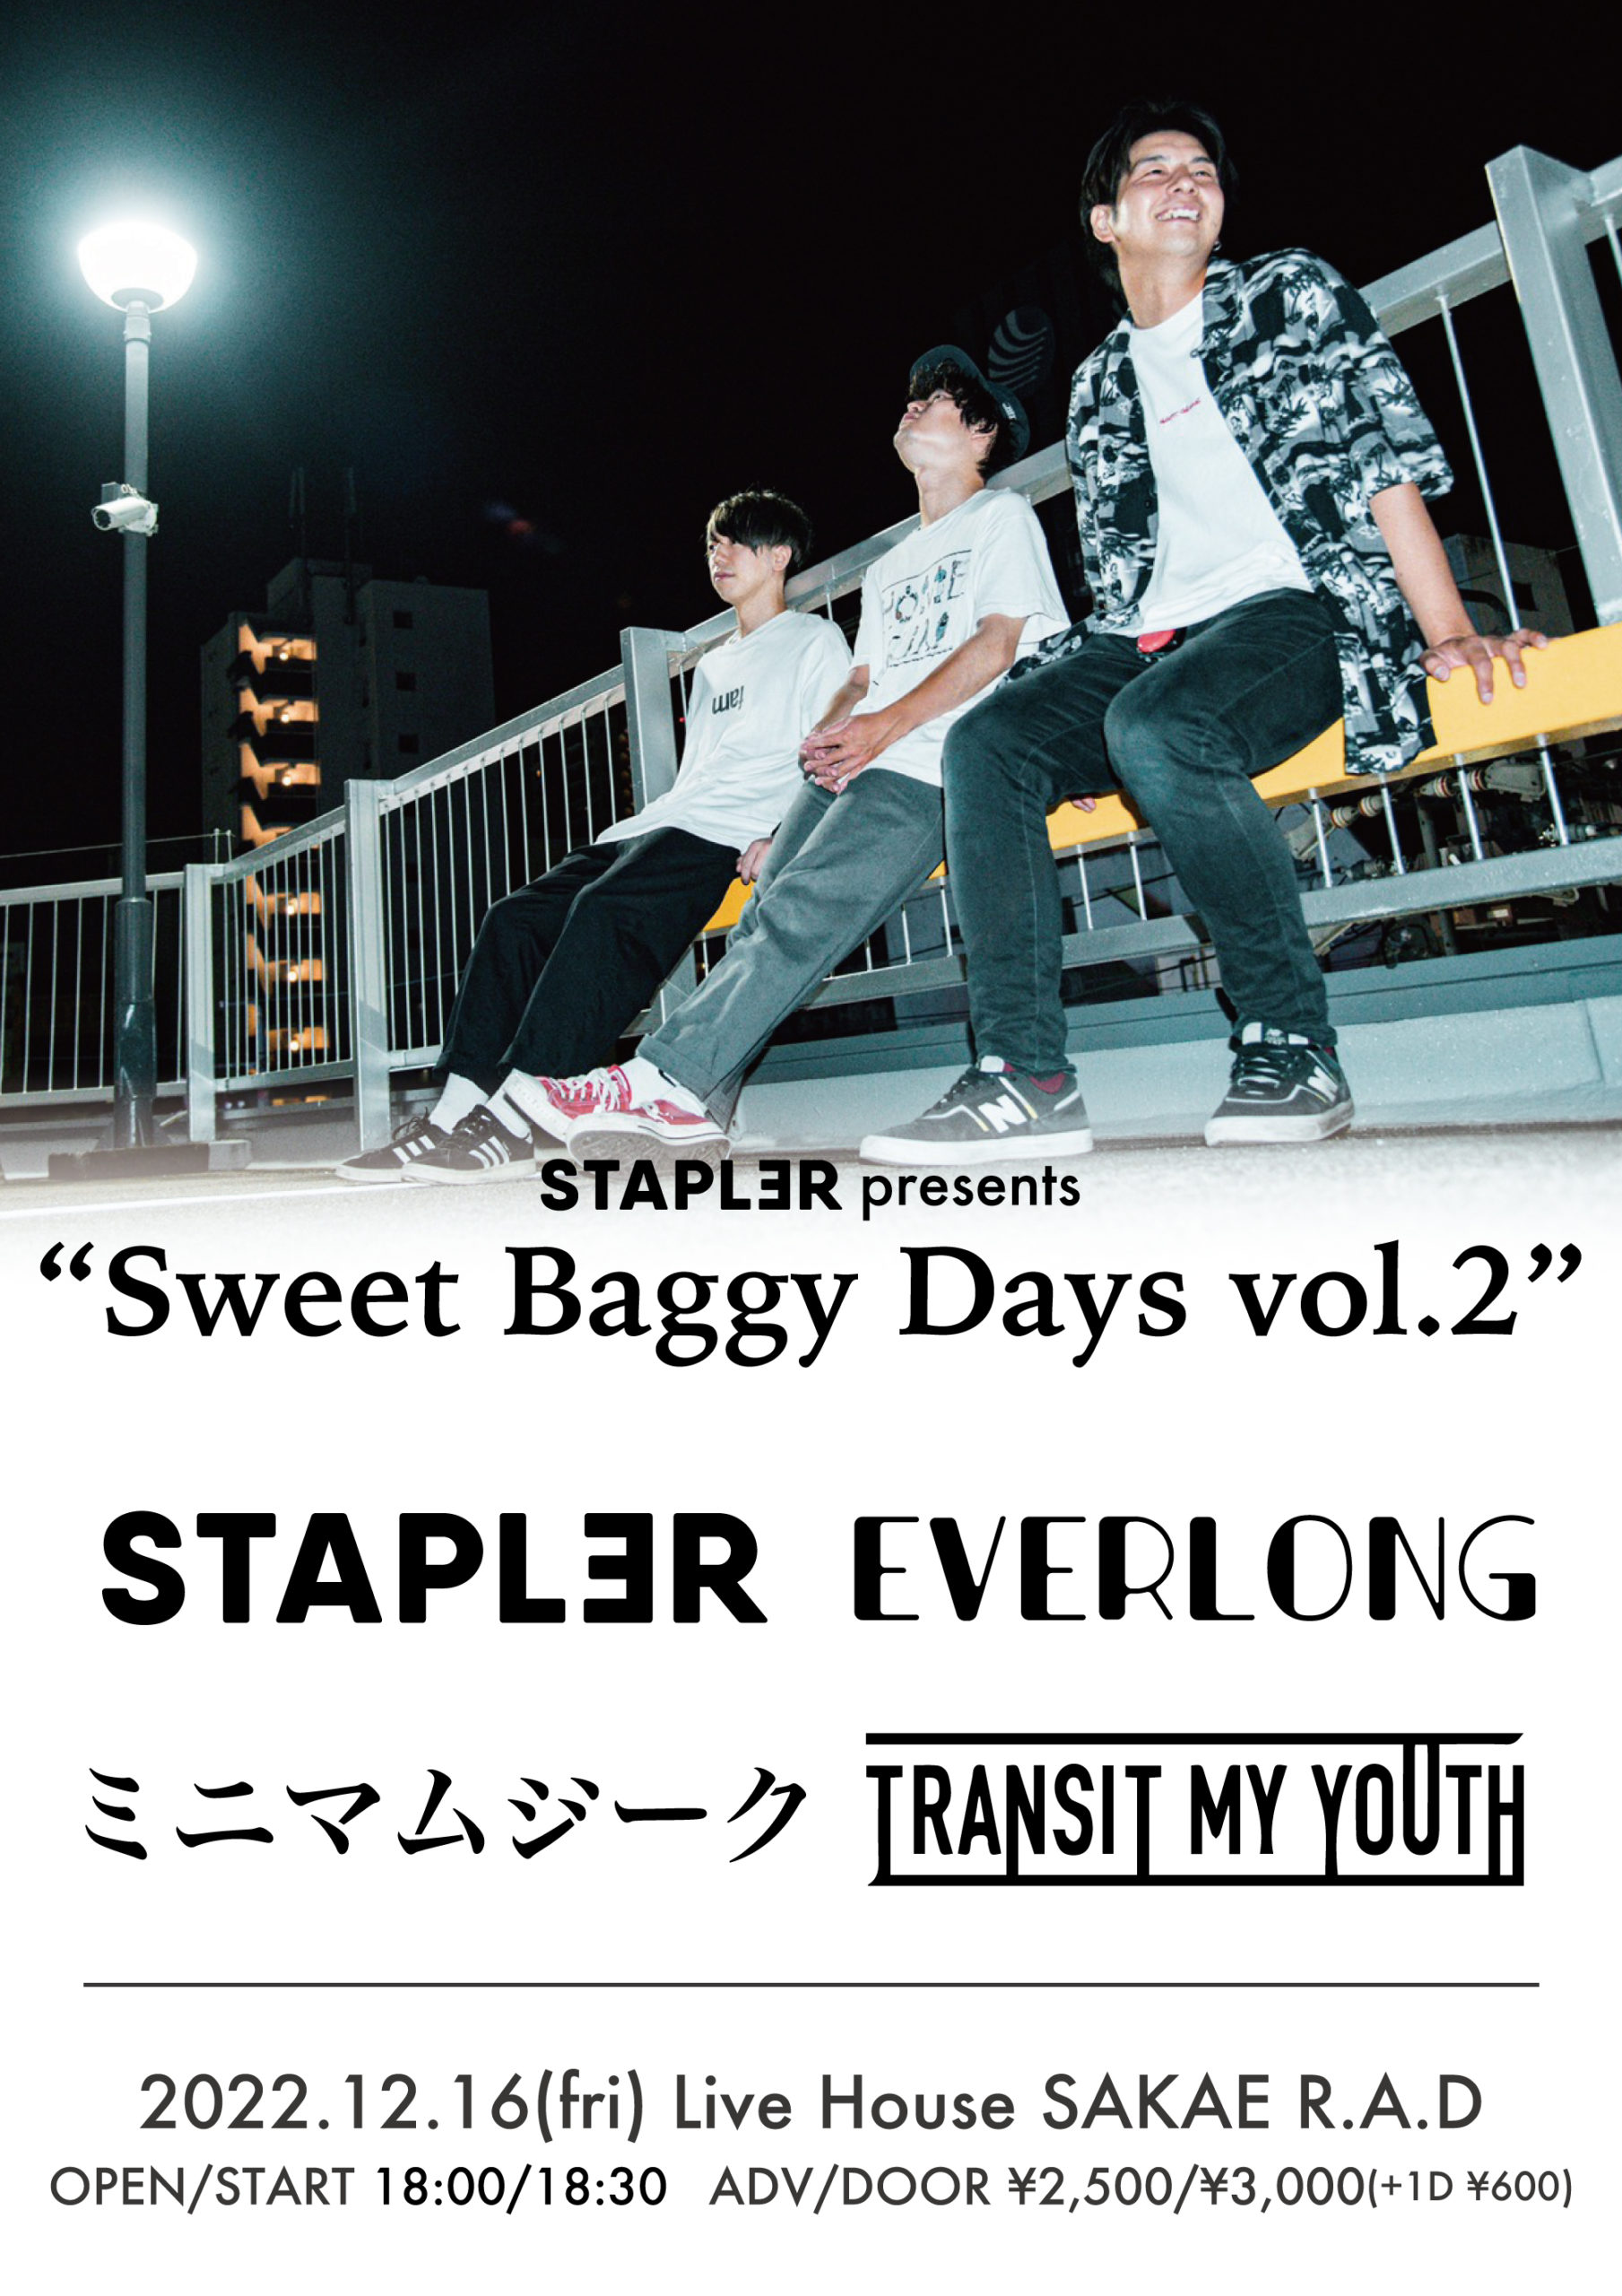 ステープラー presents “Sweet Baggy Days vol.2”